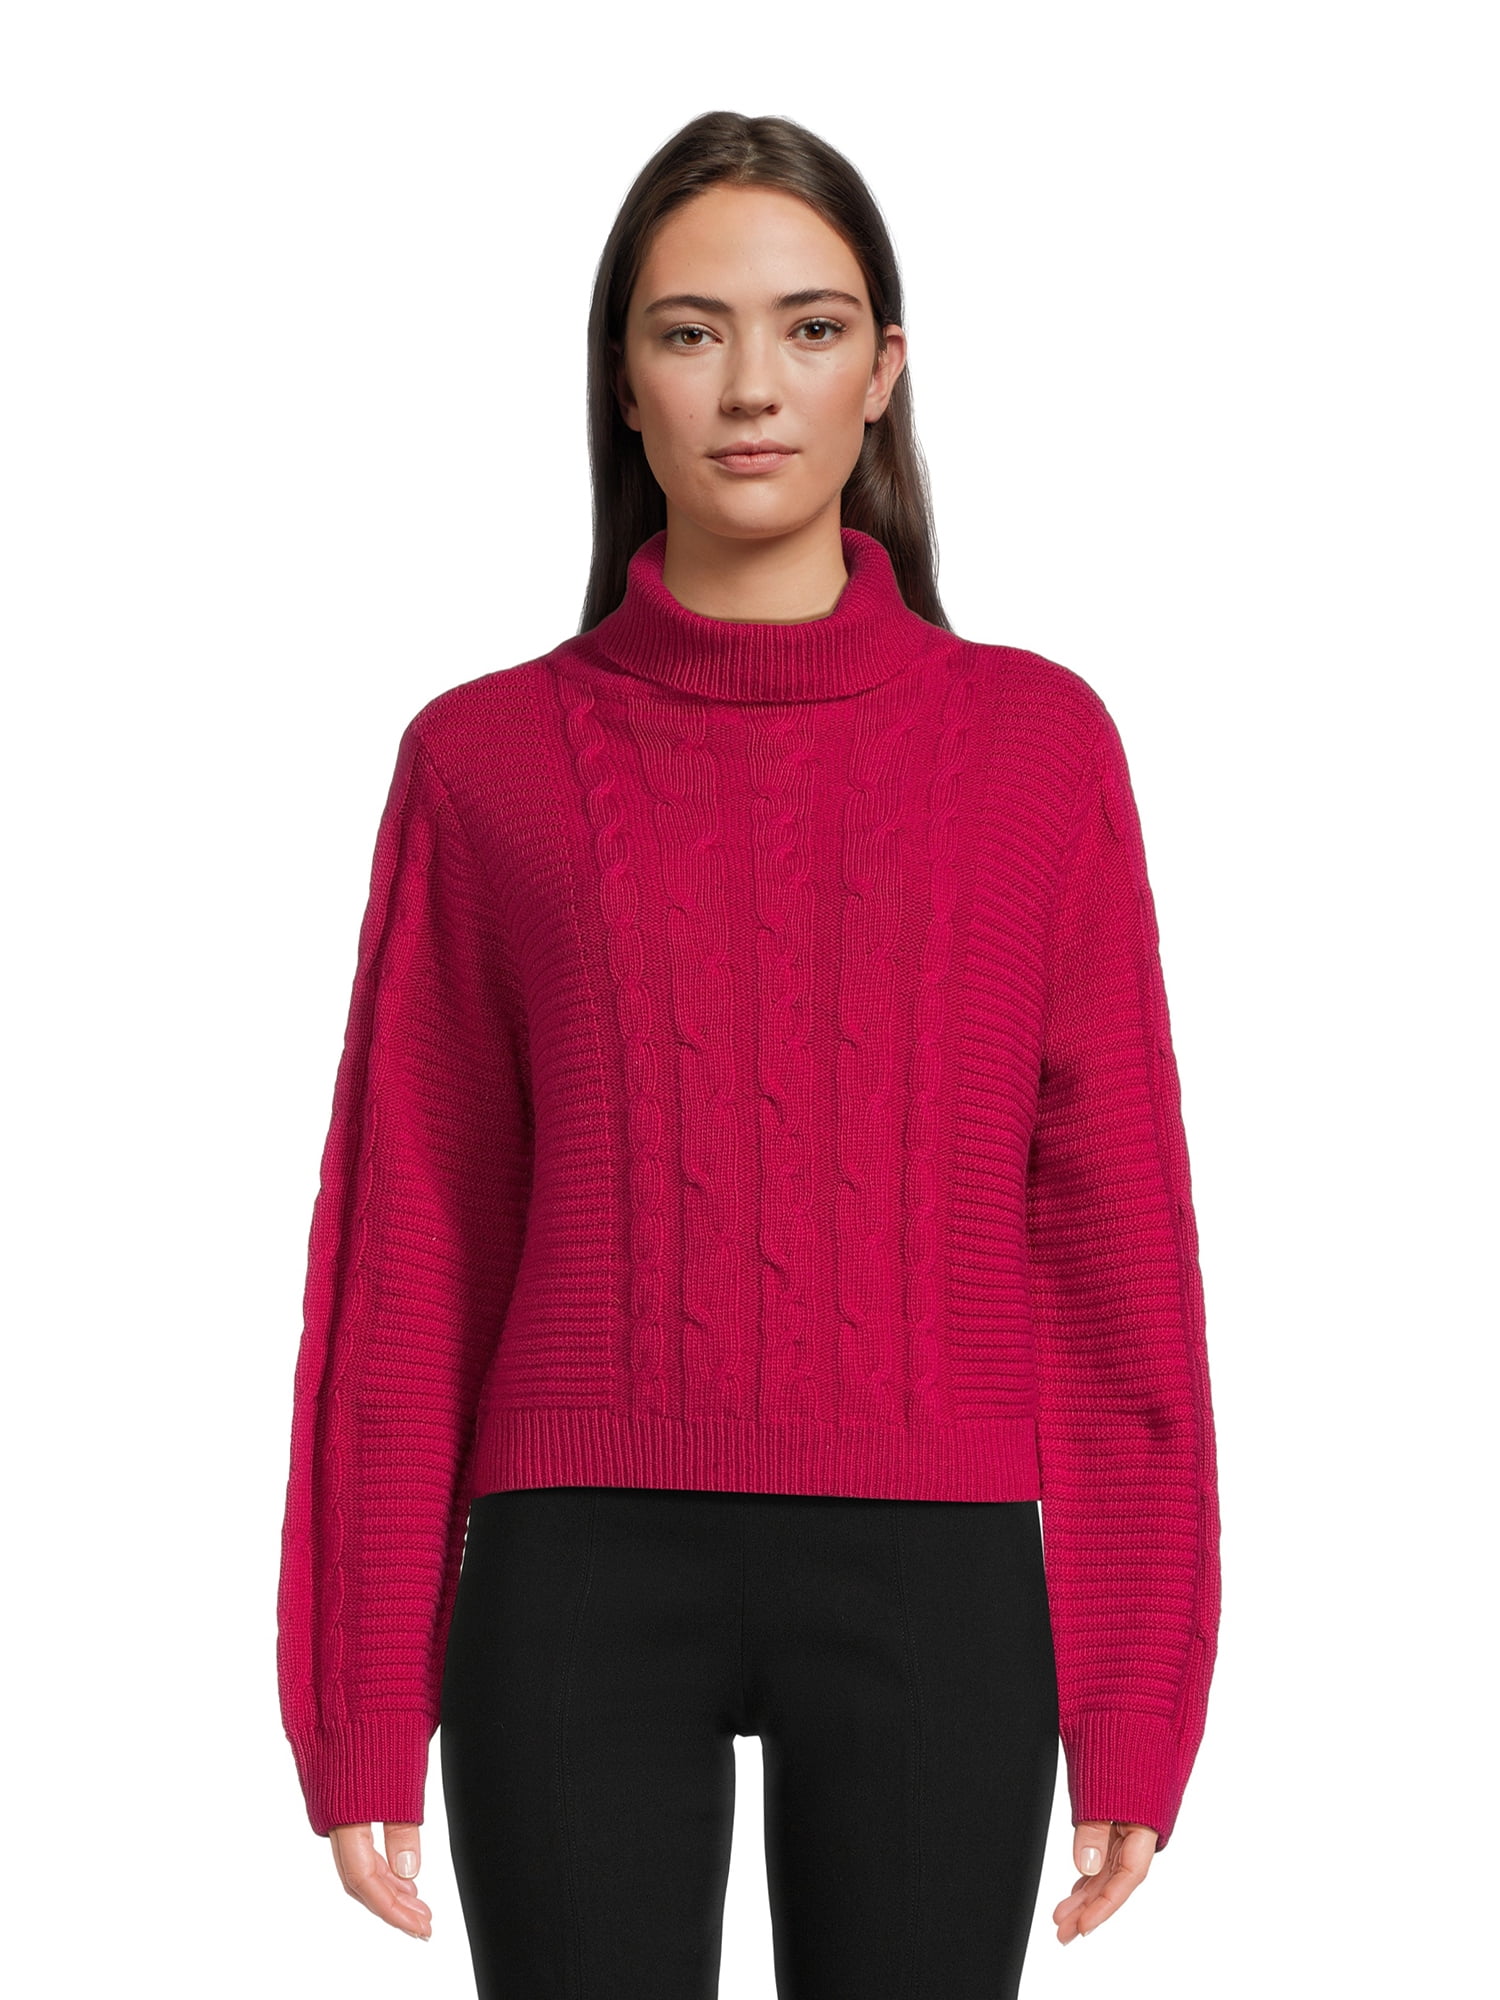 BCBG Paris Women's Cable Knit Sweater - Walmart.com